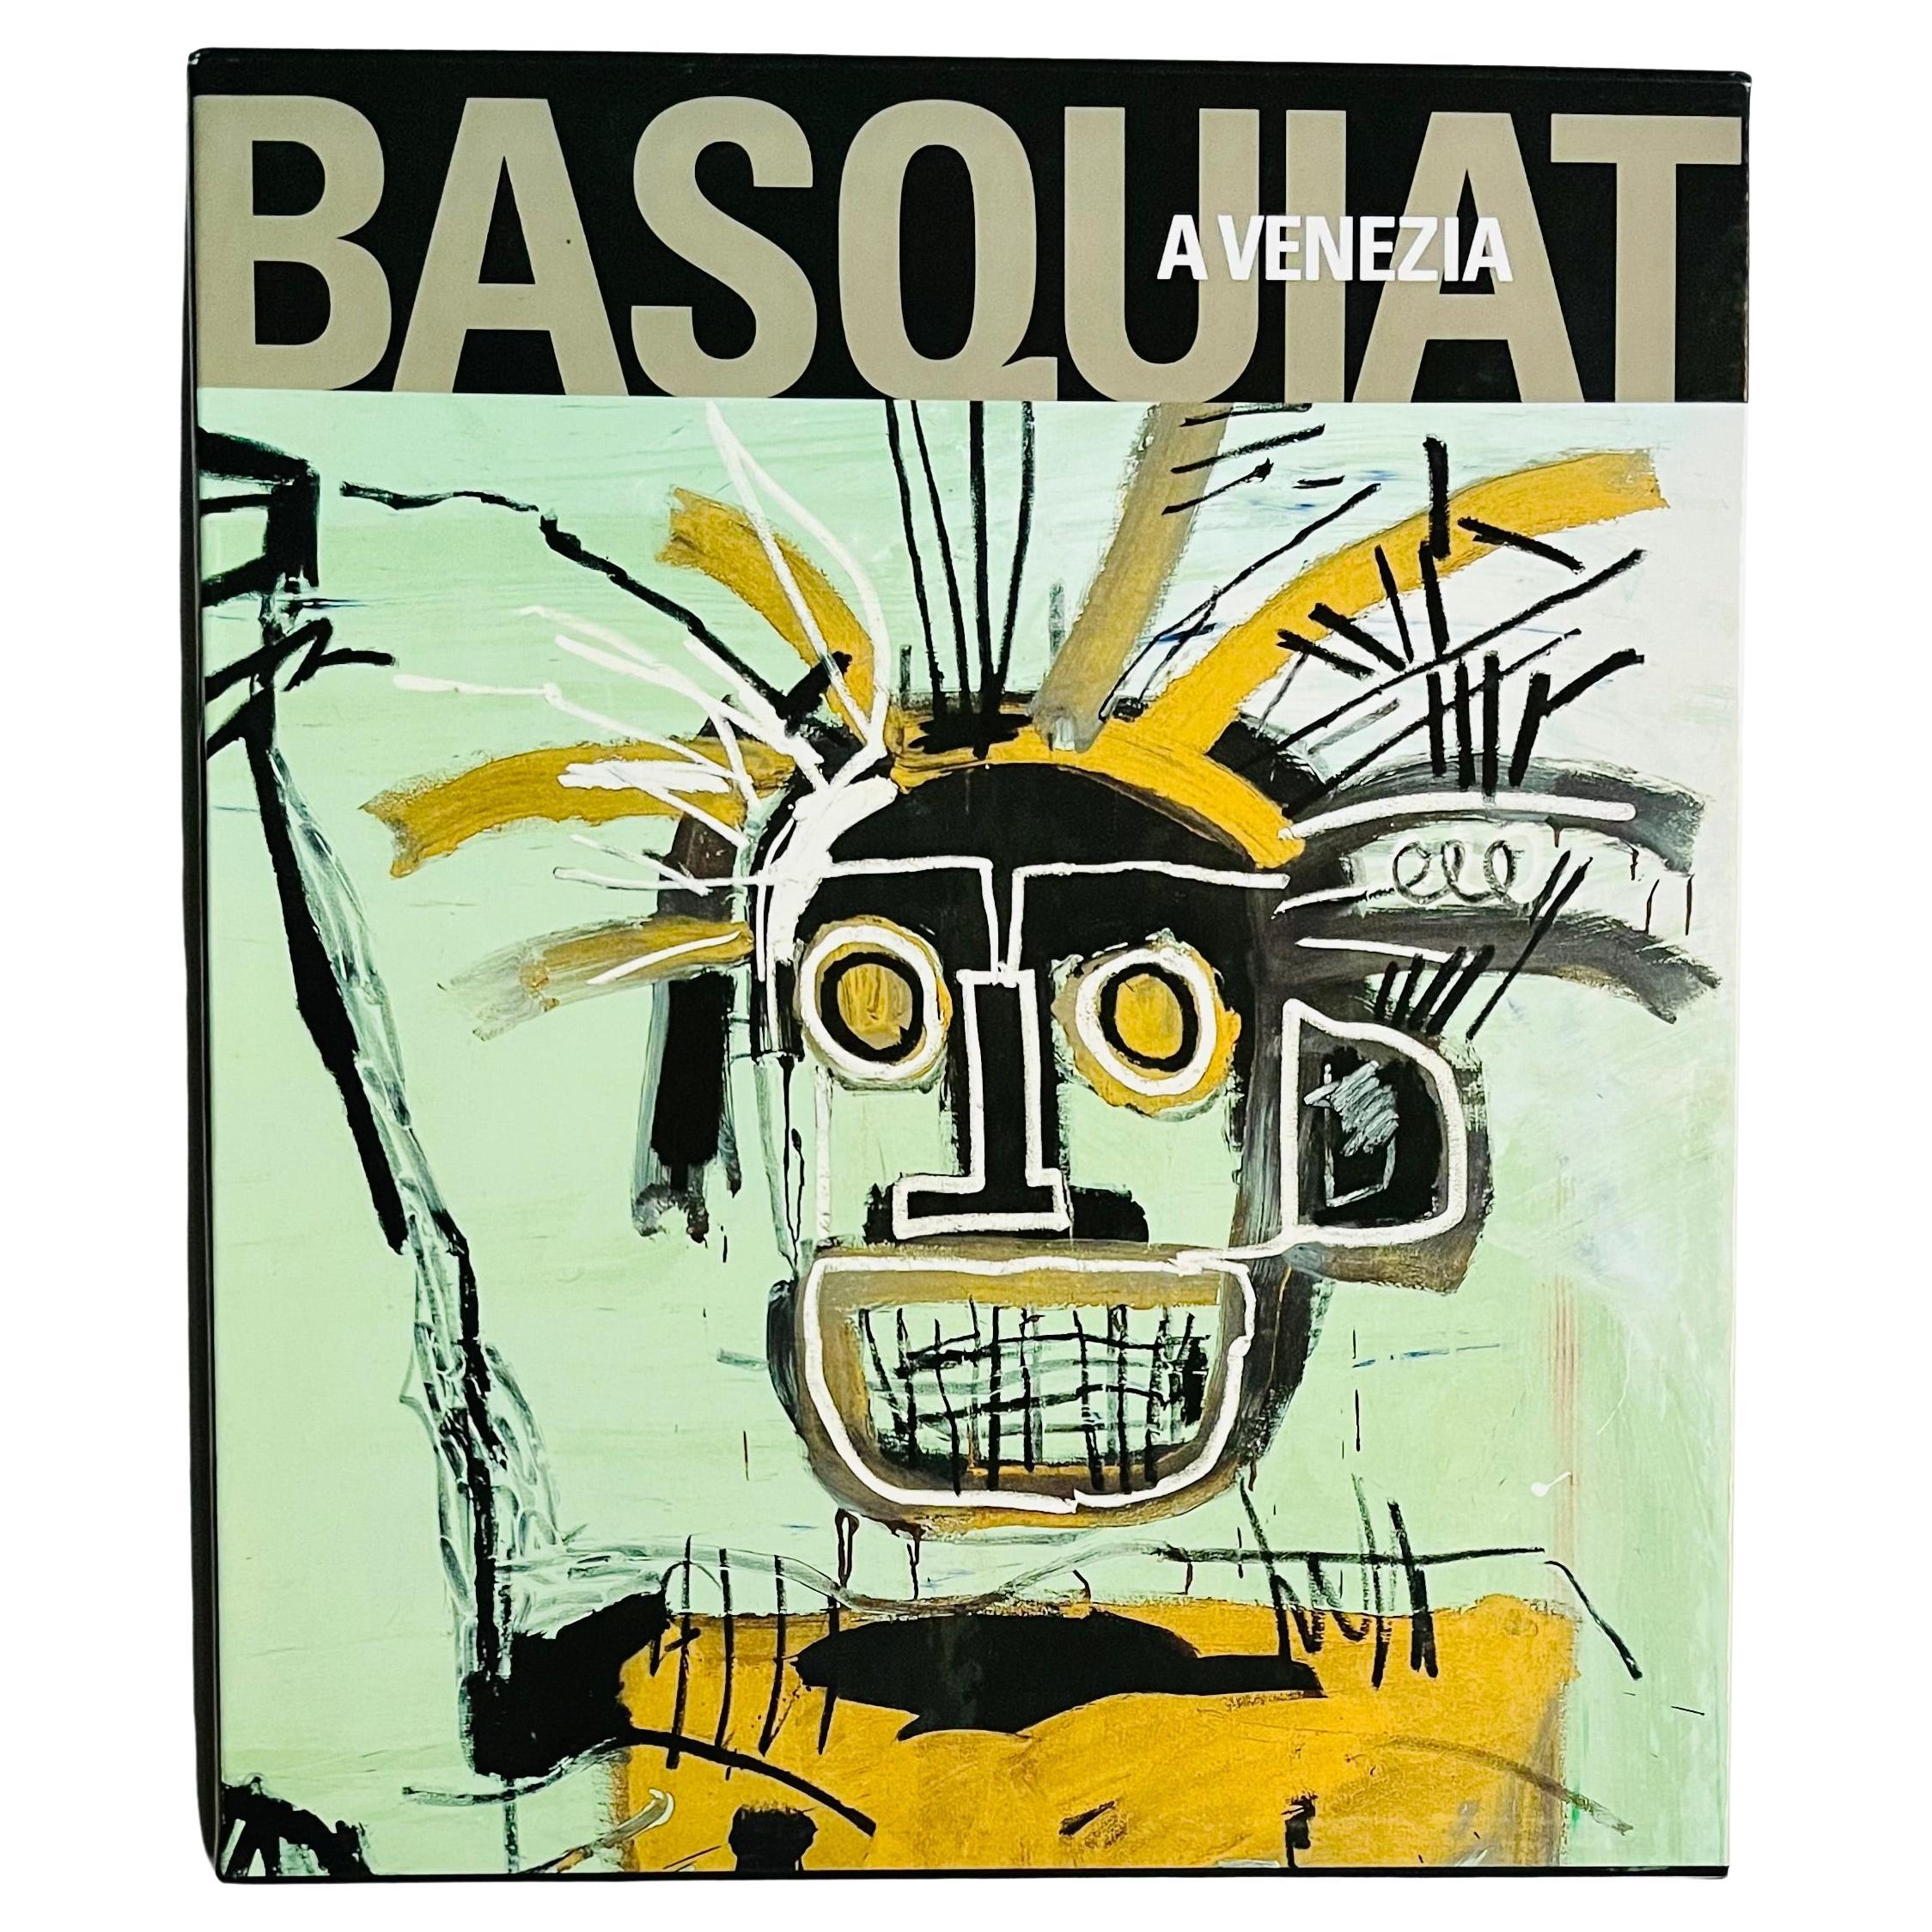 Basquiat a Venezia Exhibition Catalog 1999 (vintage Basquiat exhibition catalog)